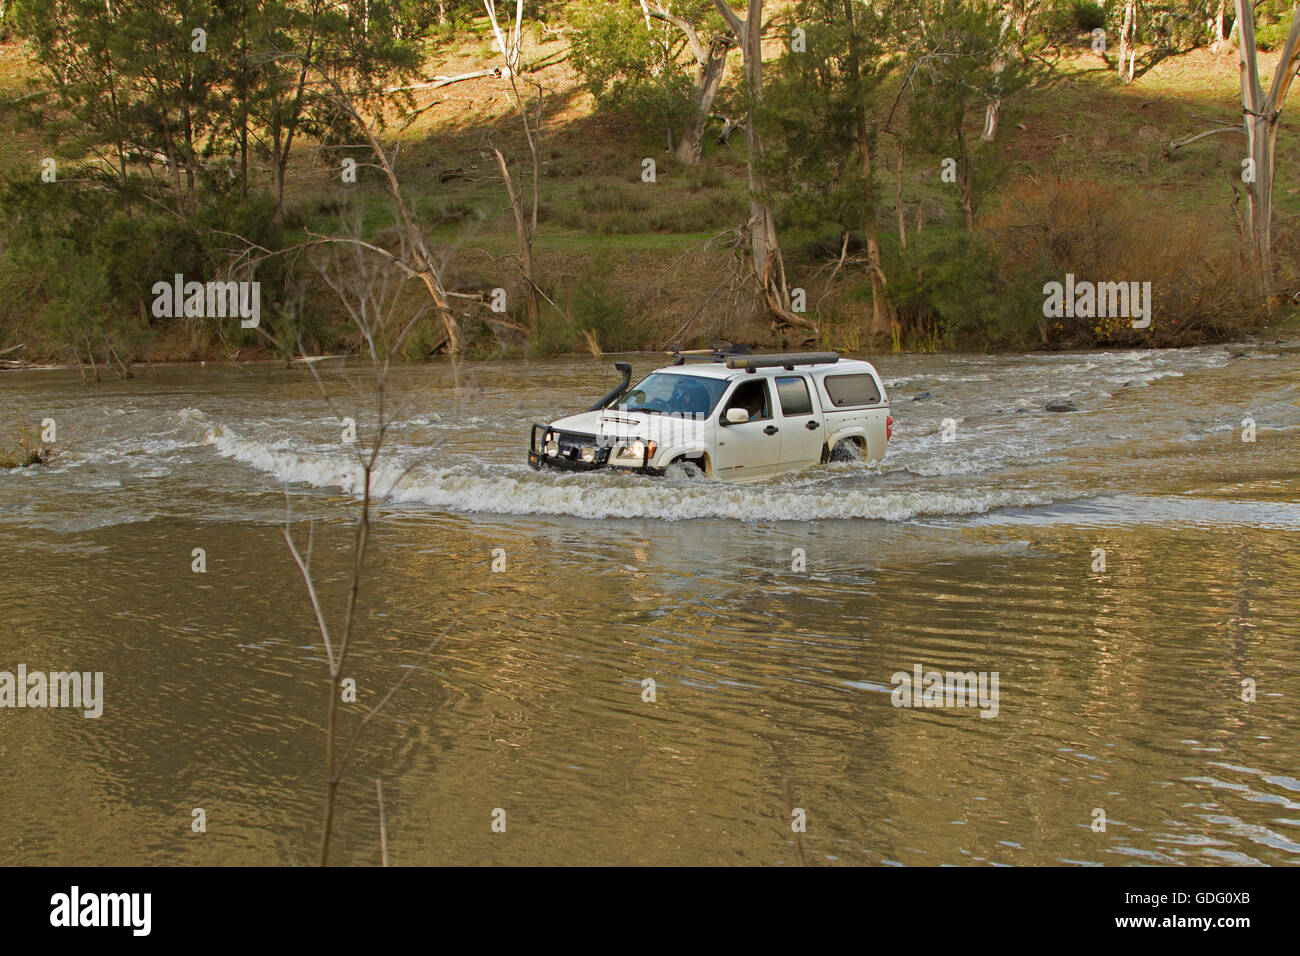 Vehículo de tracción en las cuatro ruedas crear ola de arco de agua tapado blanco haciendo peligroso cruce del río inundado en NSW.Australia Foto de stock